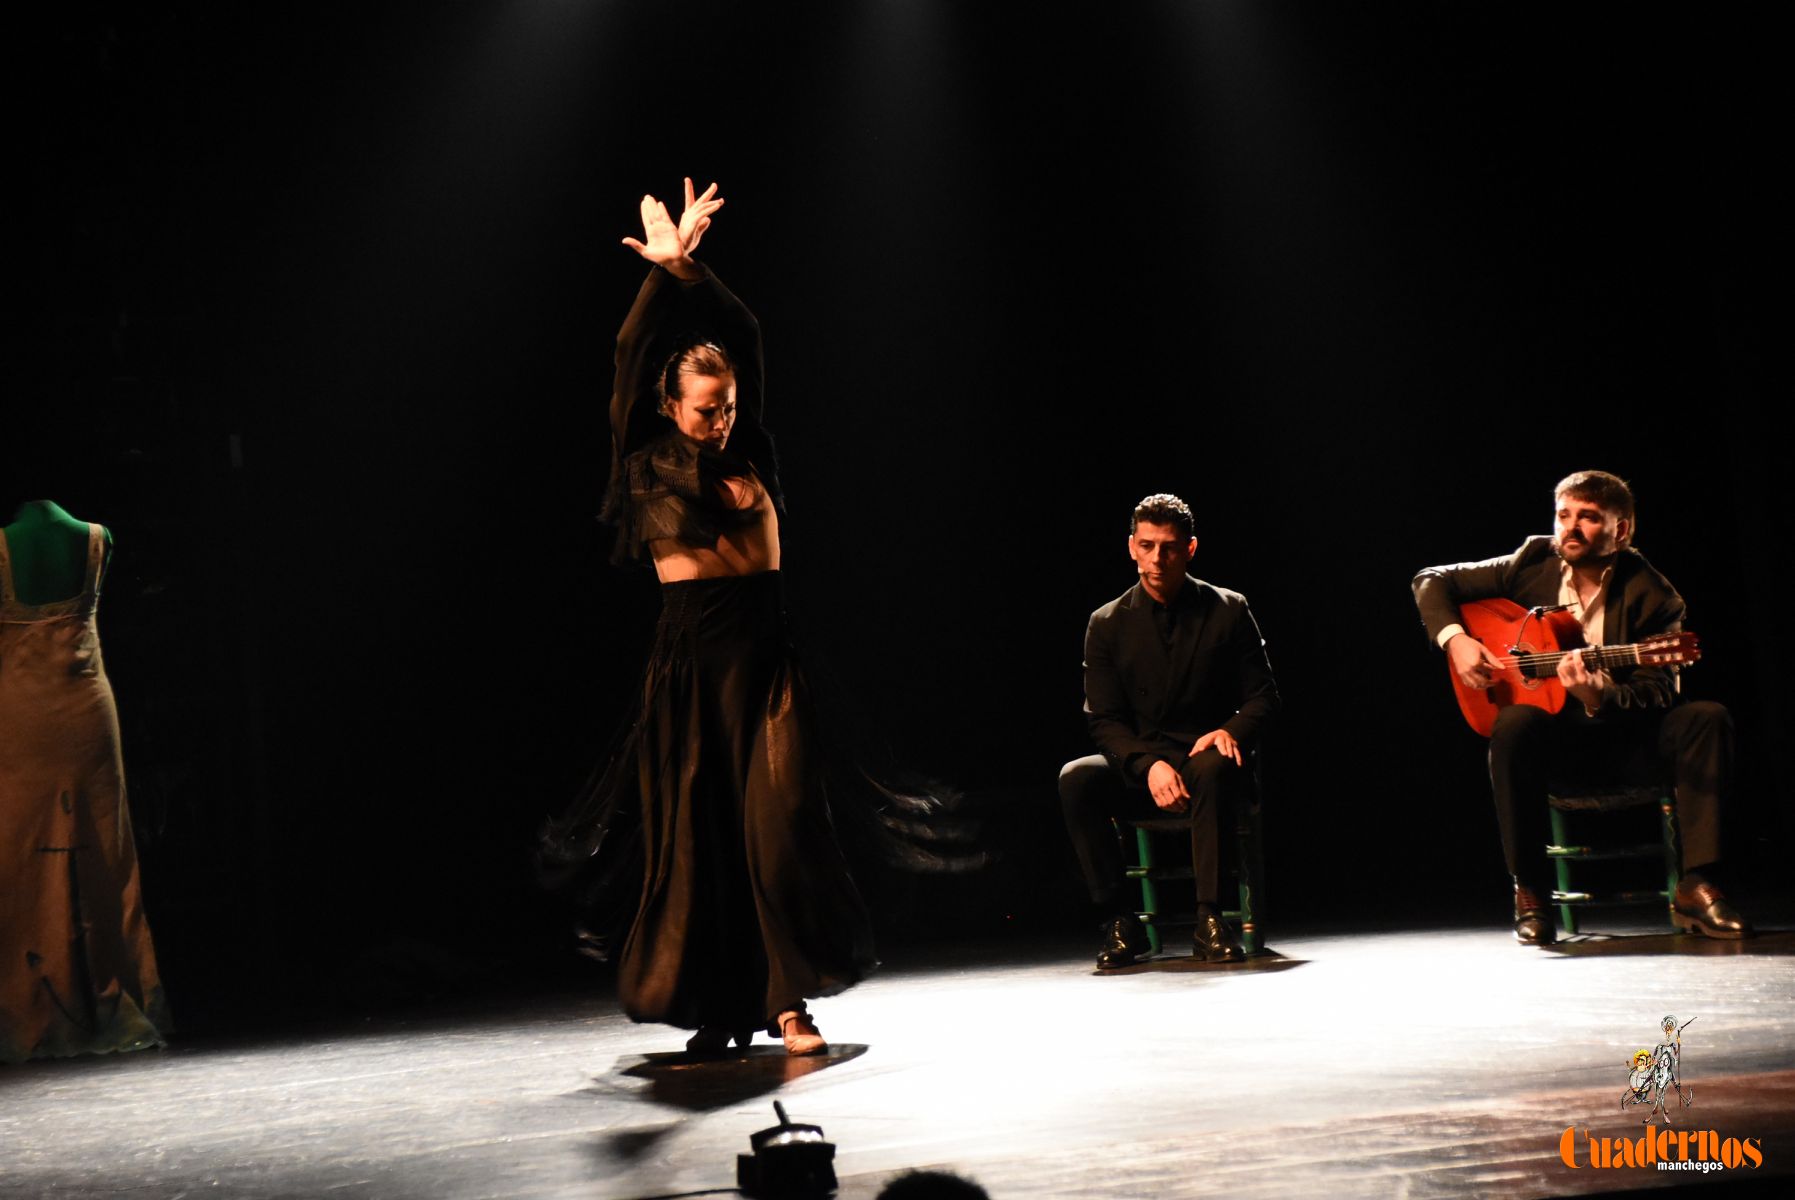 La gran Lucía Ruibal levanta de sus asientos al público del Marcelo Grande con su espectáculo “La bailarina salvaje”